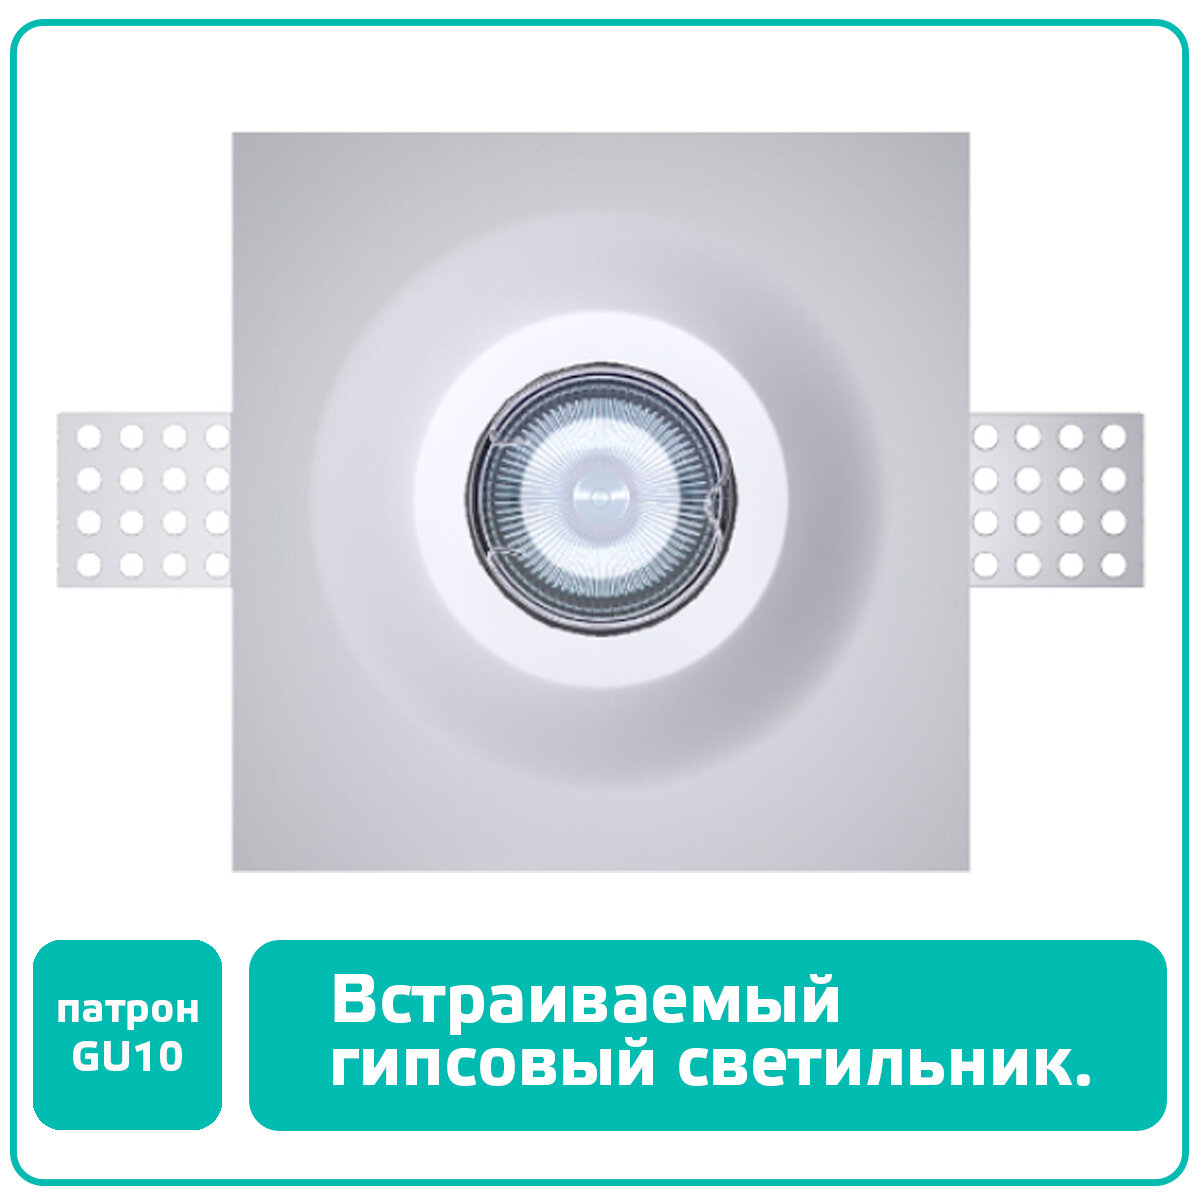 Гипсовый светильник встраиваемый в потолок, светодиодный (цоколь GU10), под покраску, ASTRO-003